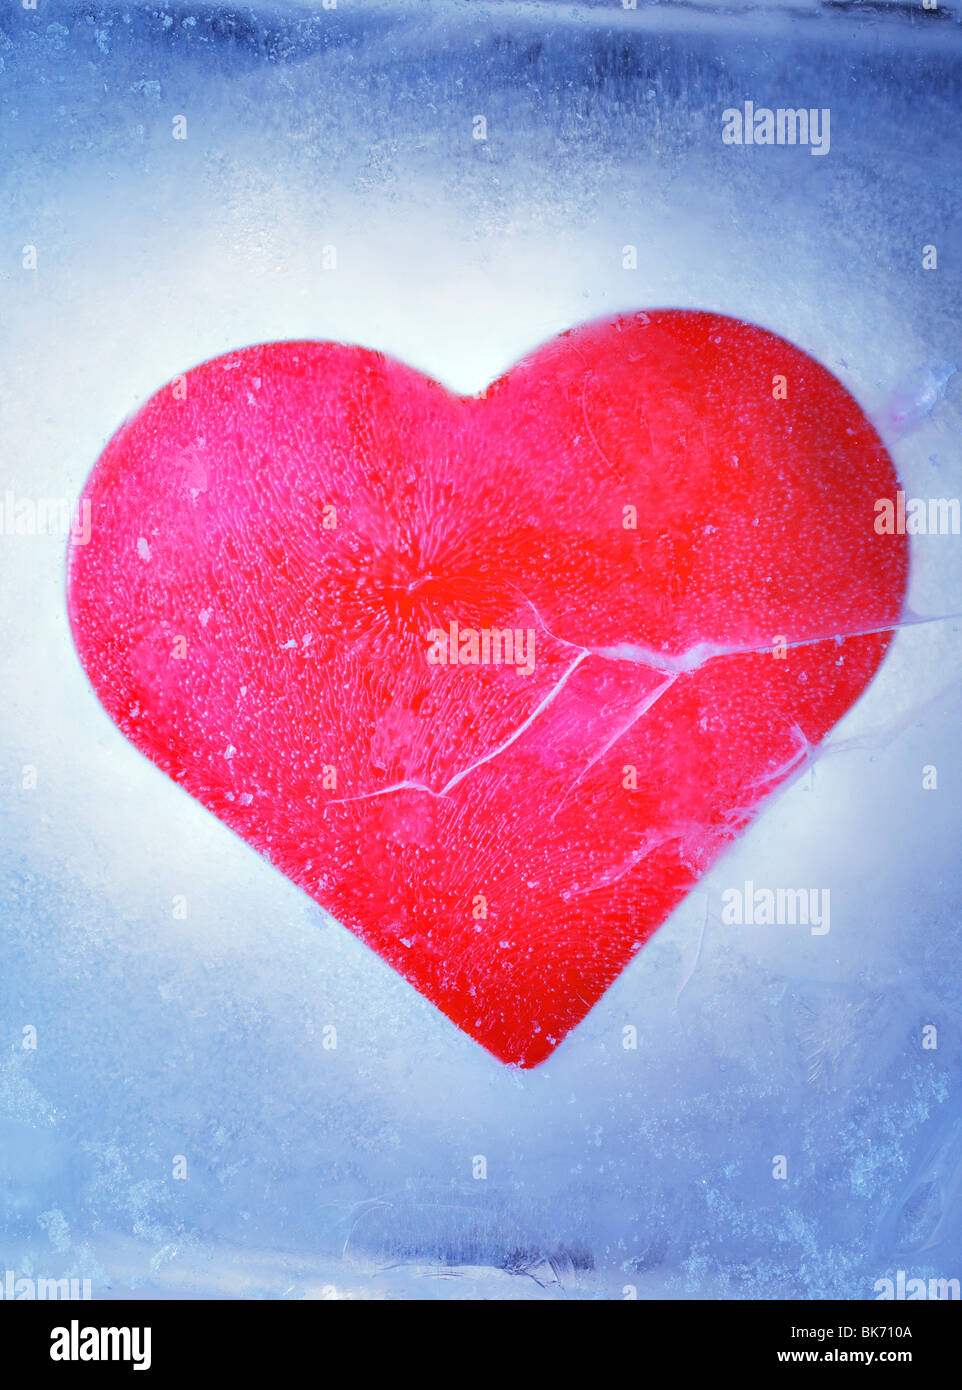 Un corazón rojo congelado en un bloque de hielo Foto de stock